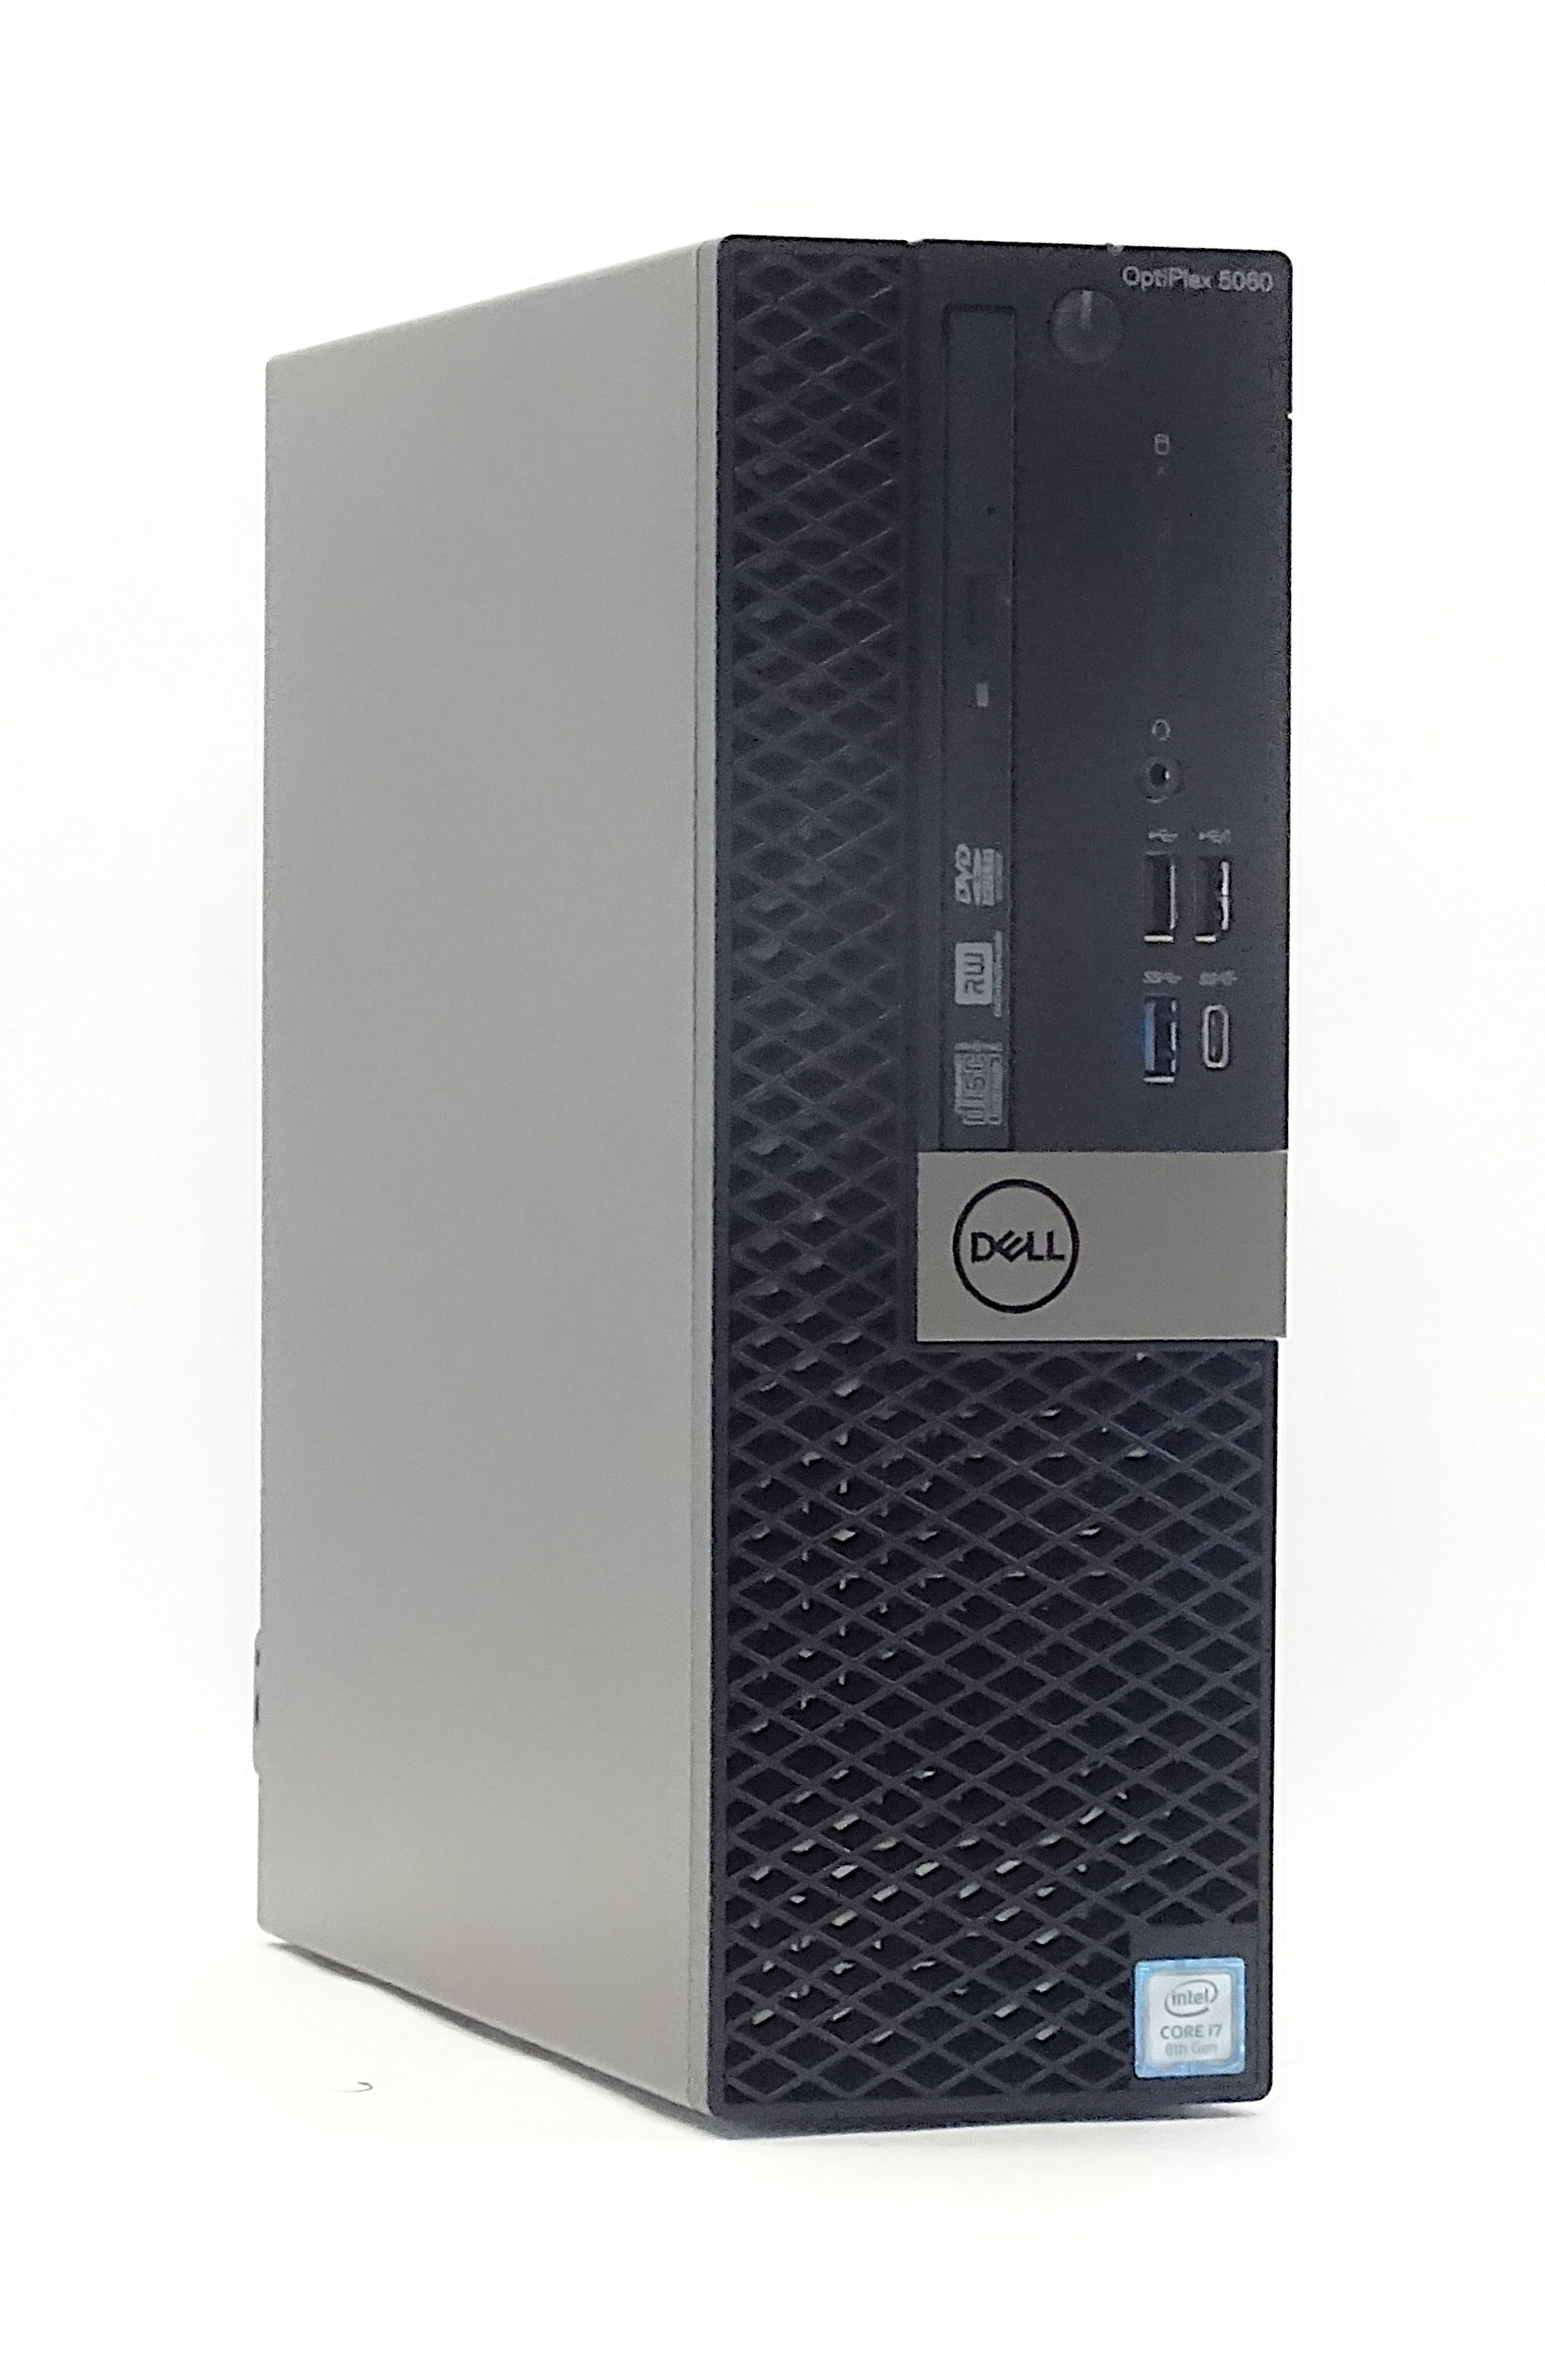 Dell Optiplex 5060 Desktop PC, Intel Core i7, 16GB RAM, 240GB SSD, Windows 10